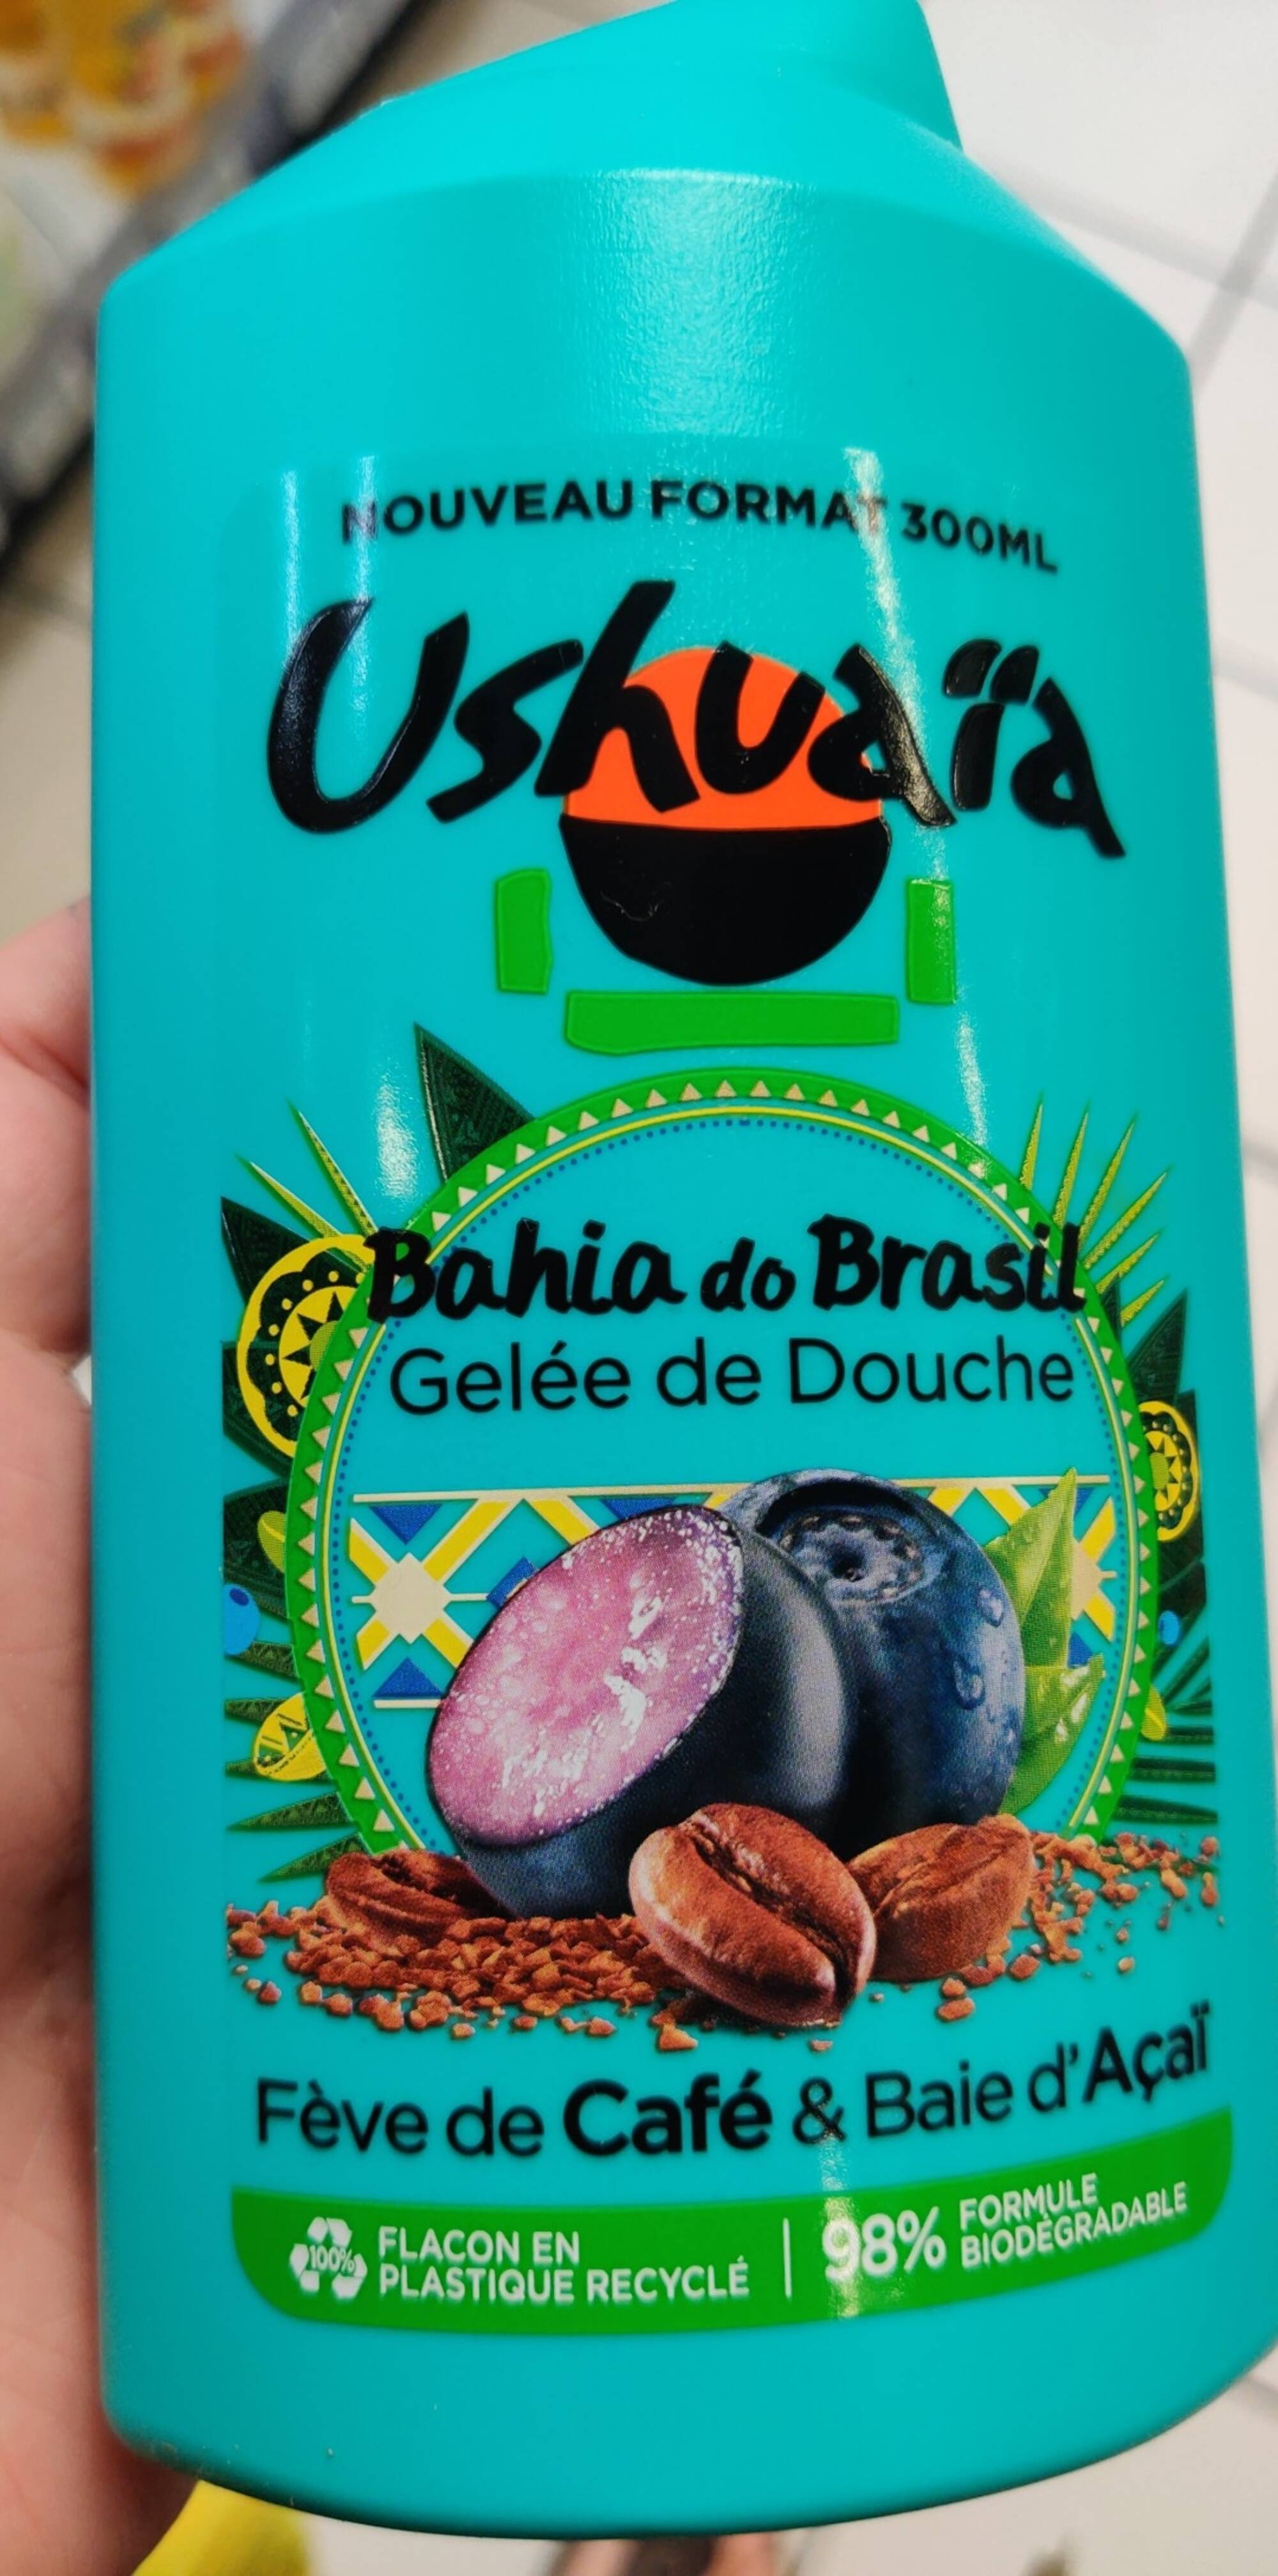 Ushuaia Brasil Gelée de Douche